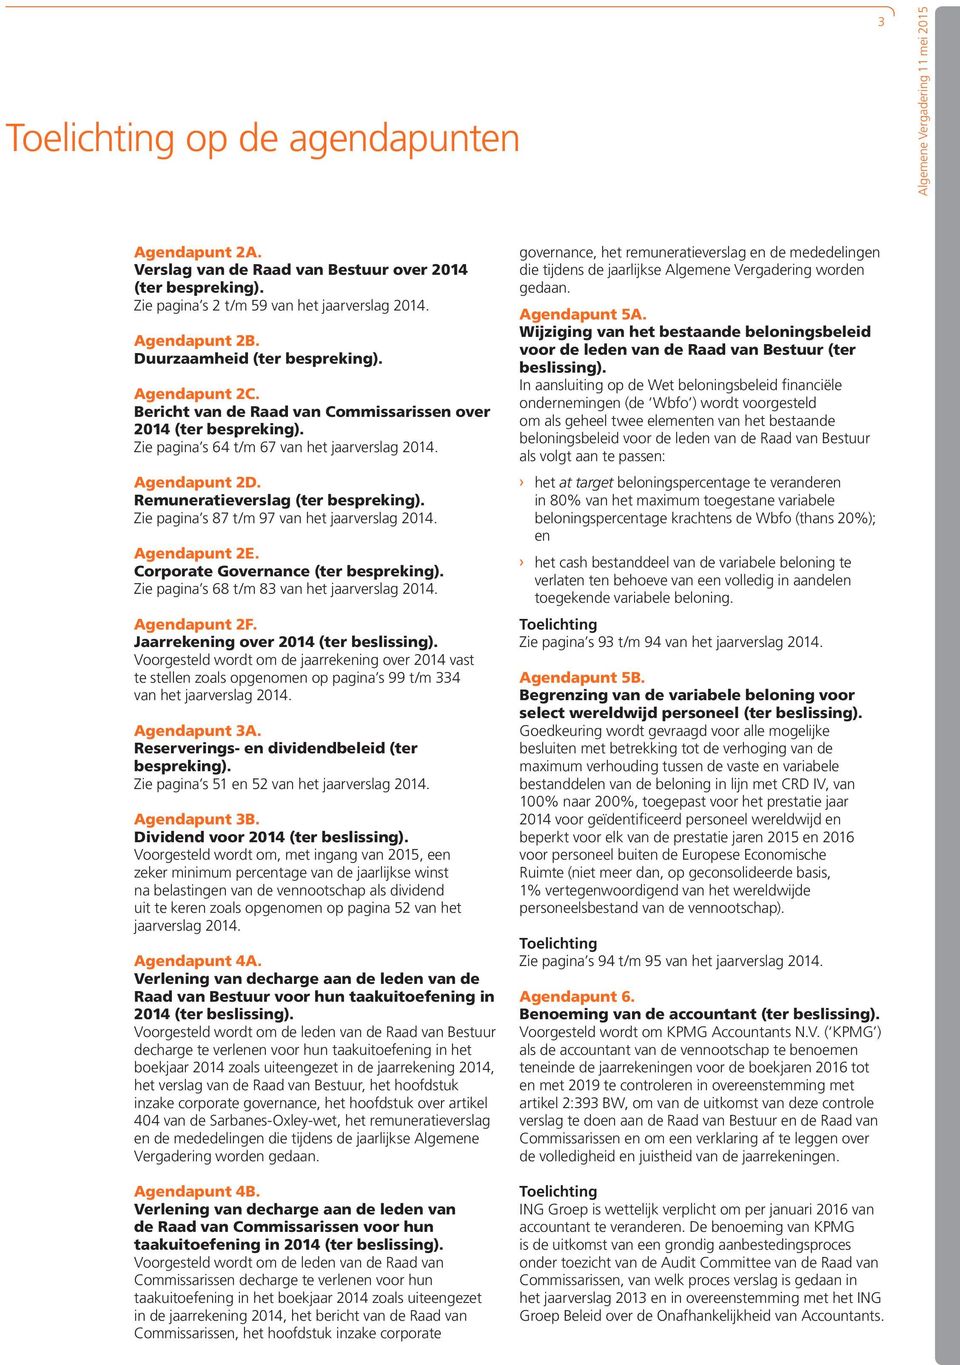 Remuneratieverslag (ter bespreking). Zie pagina s 87 t/m 97 van het jaarverslag 2014. Agendapunt 2E. Corporate Governance (ter bespreking). Zie pagina s 68 t/m 83 van het jaarverslag 2014.